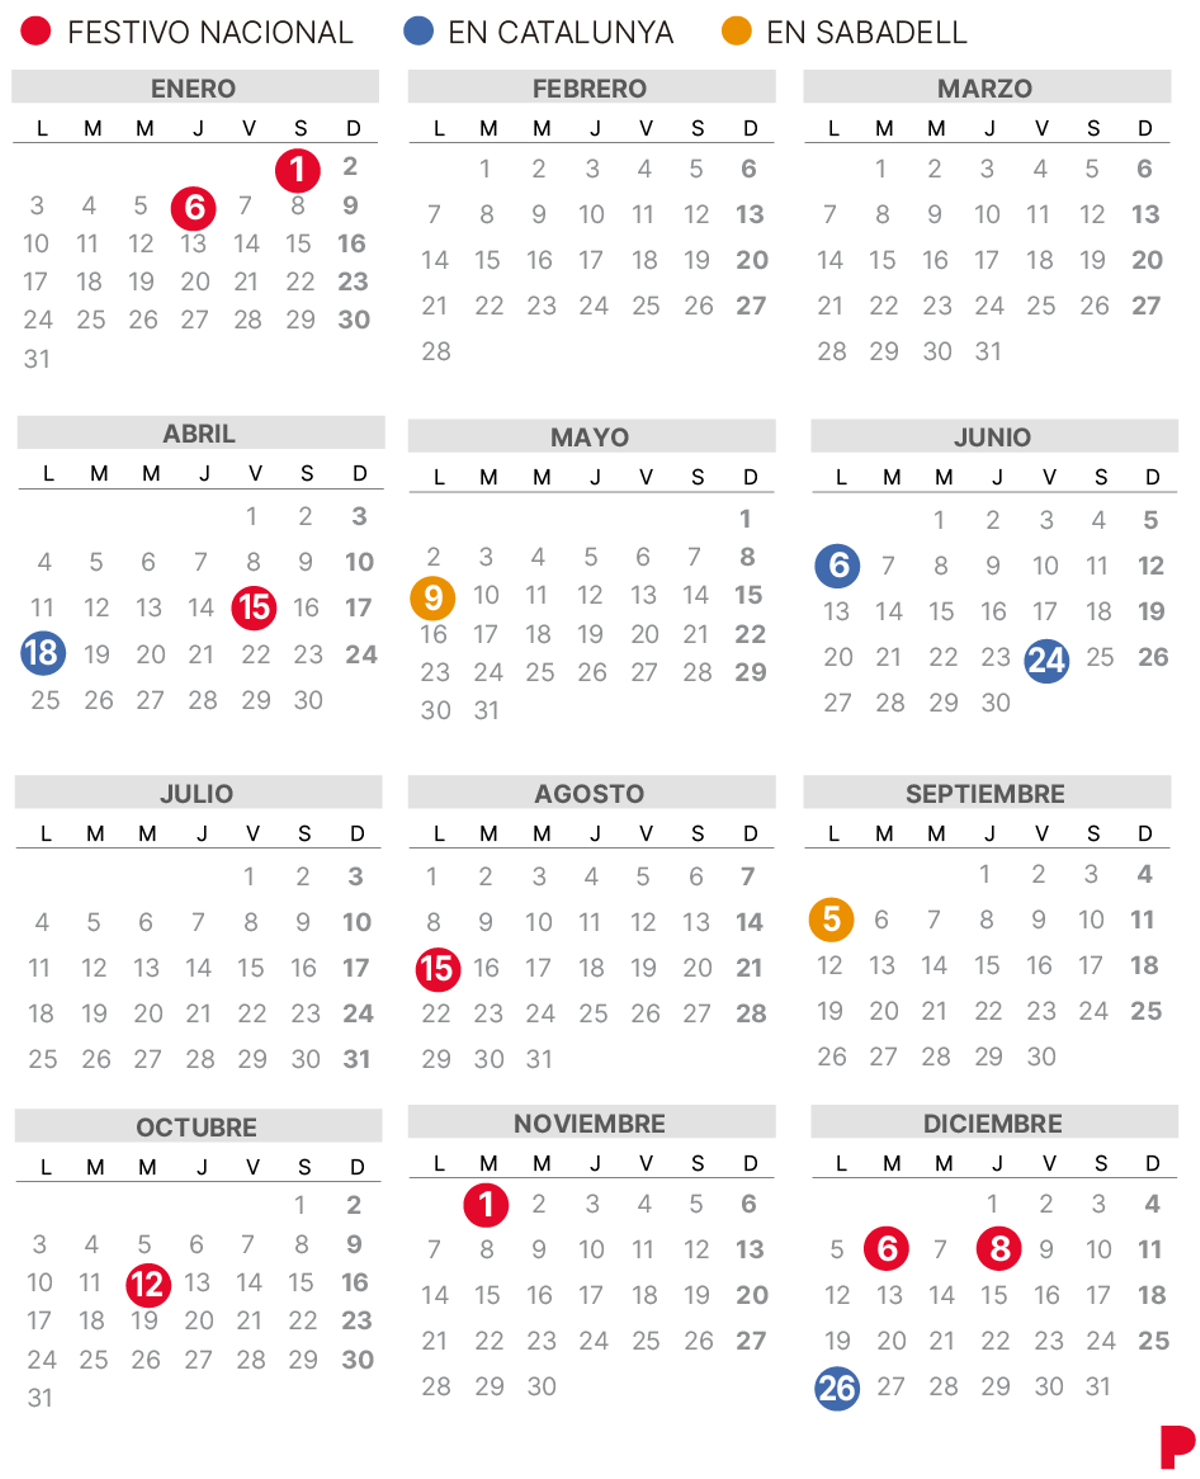 Calendario laboral Sabadell 2022.